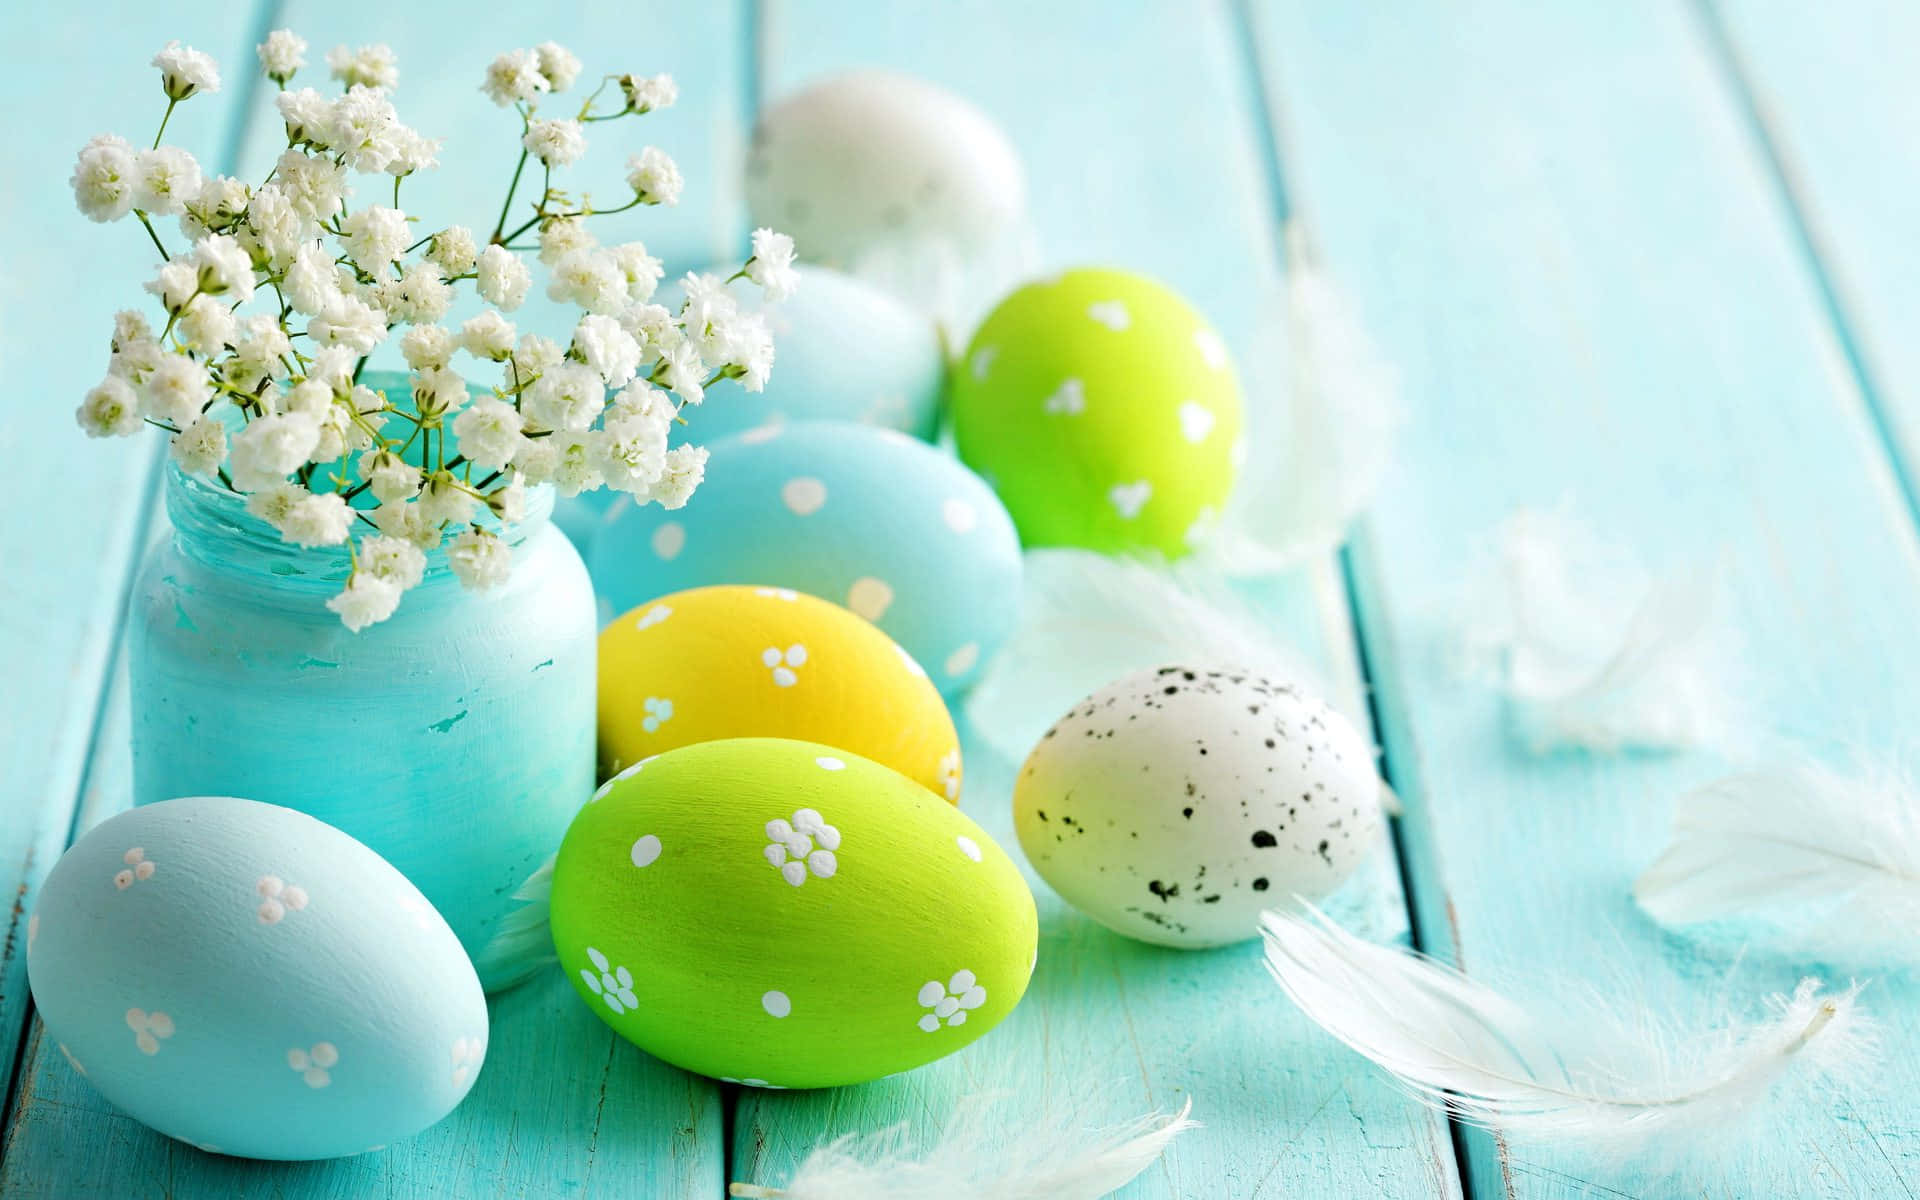 Feiernsie Ostern Mit Lebendigen Farben!